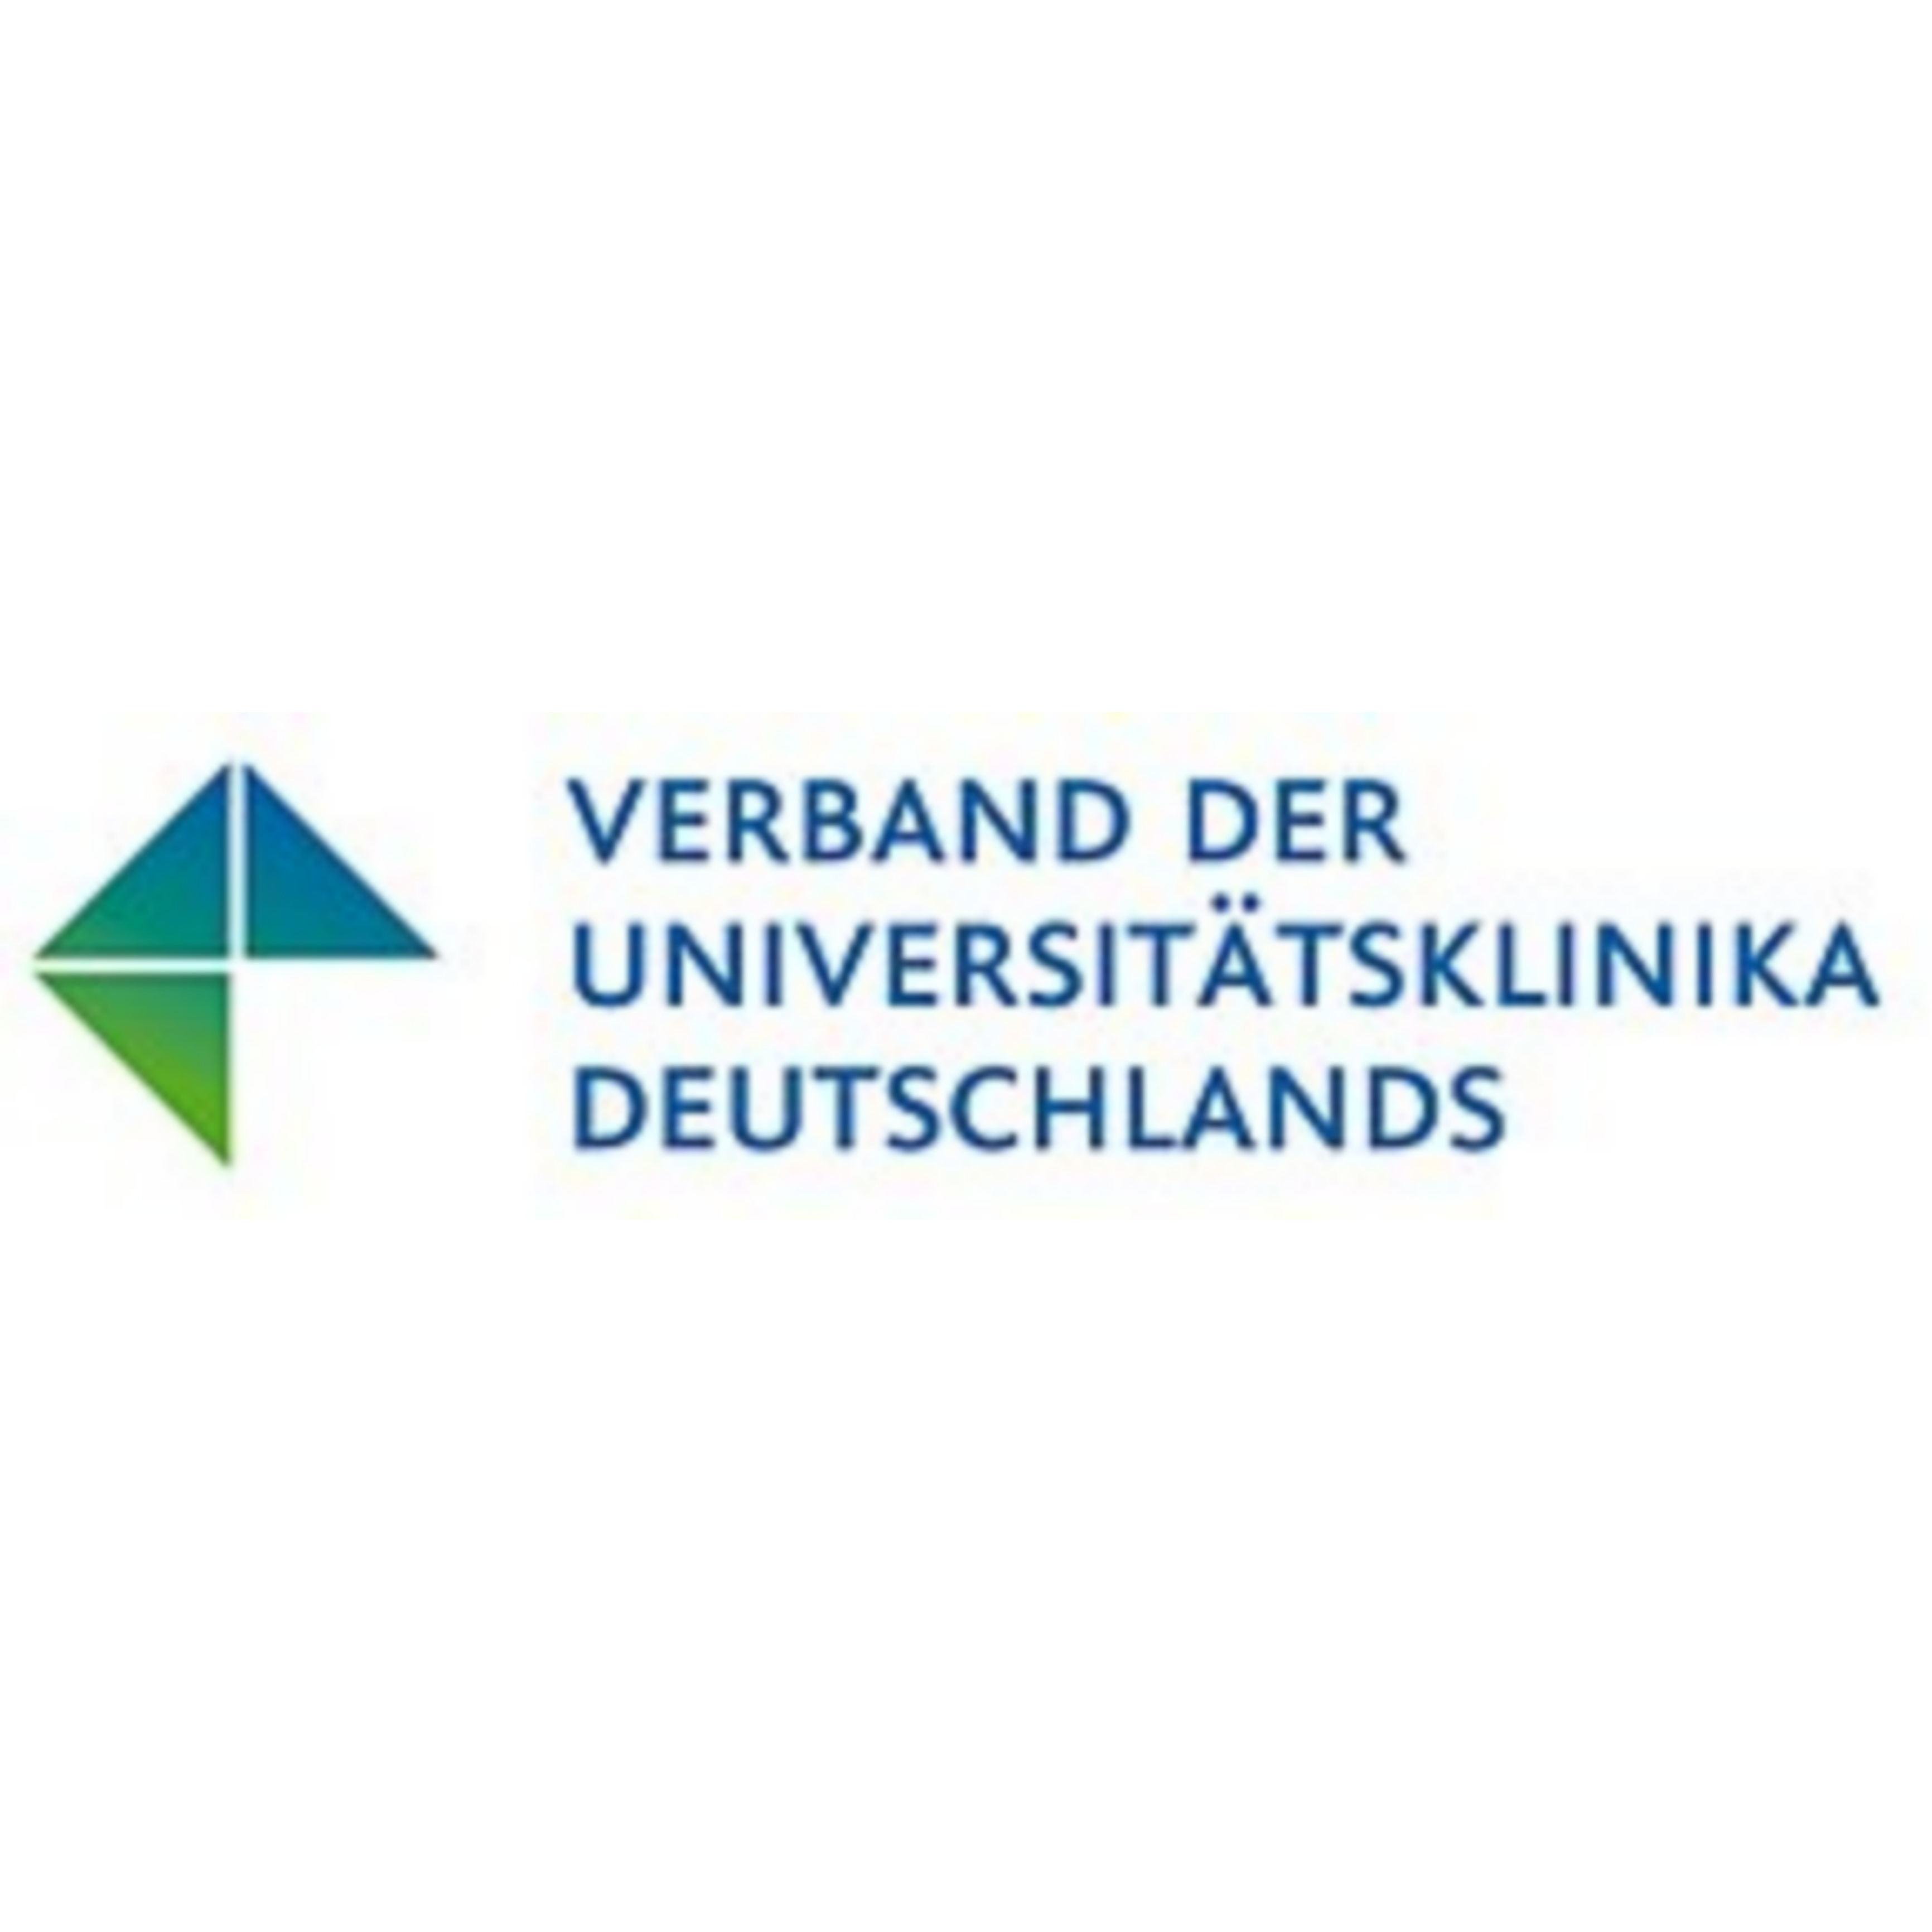 Zu sehen ist das Logo des Verbands der Universittsklinika Deutschlands. Es handelt sich um eine Wort-Bild-Marke in den Farben grn und blau.